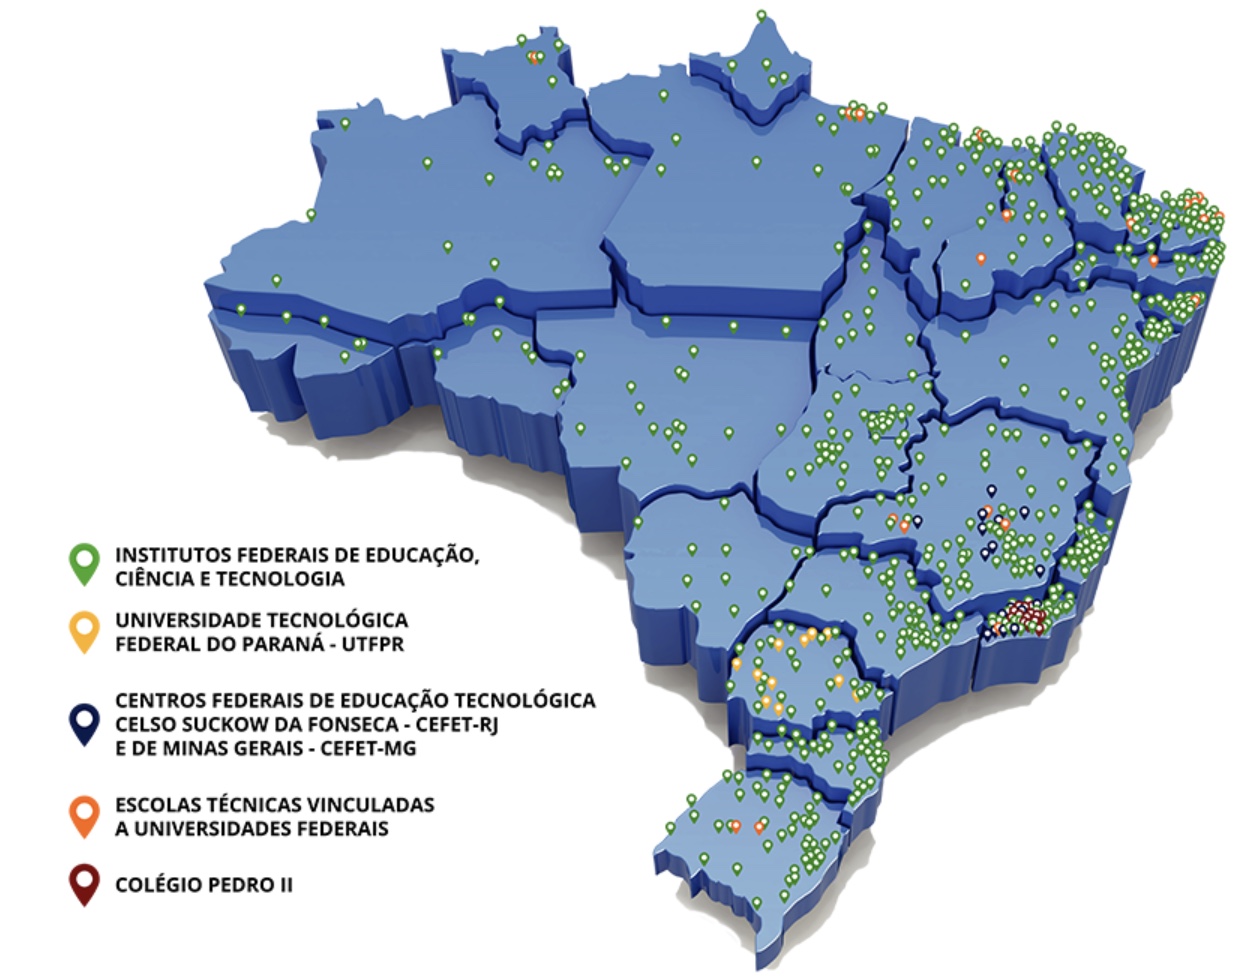 Figura contendo um mapa do Brasil com a distribuição geográfica das instituições que compõe Rede Federal de Educação Profissional, Científica e Tecnológica